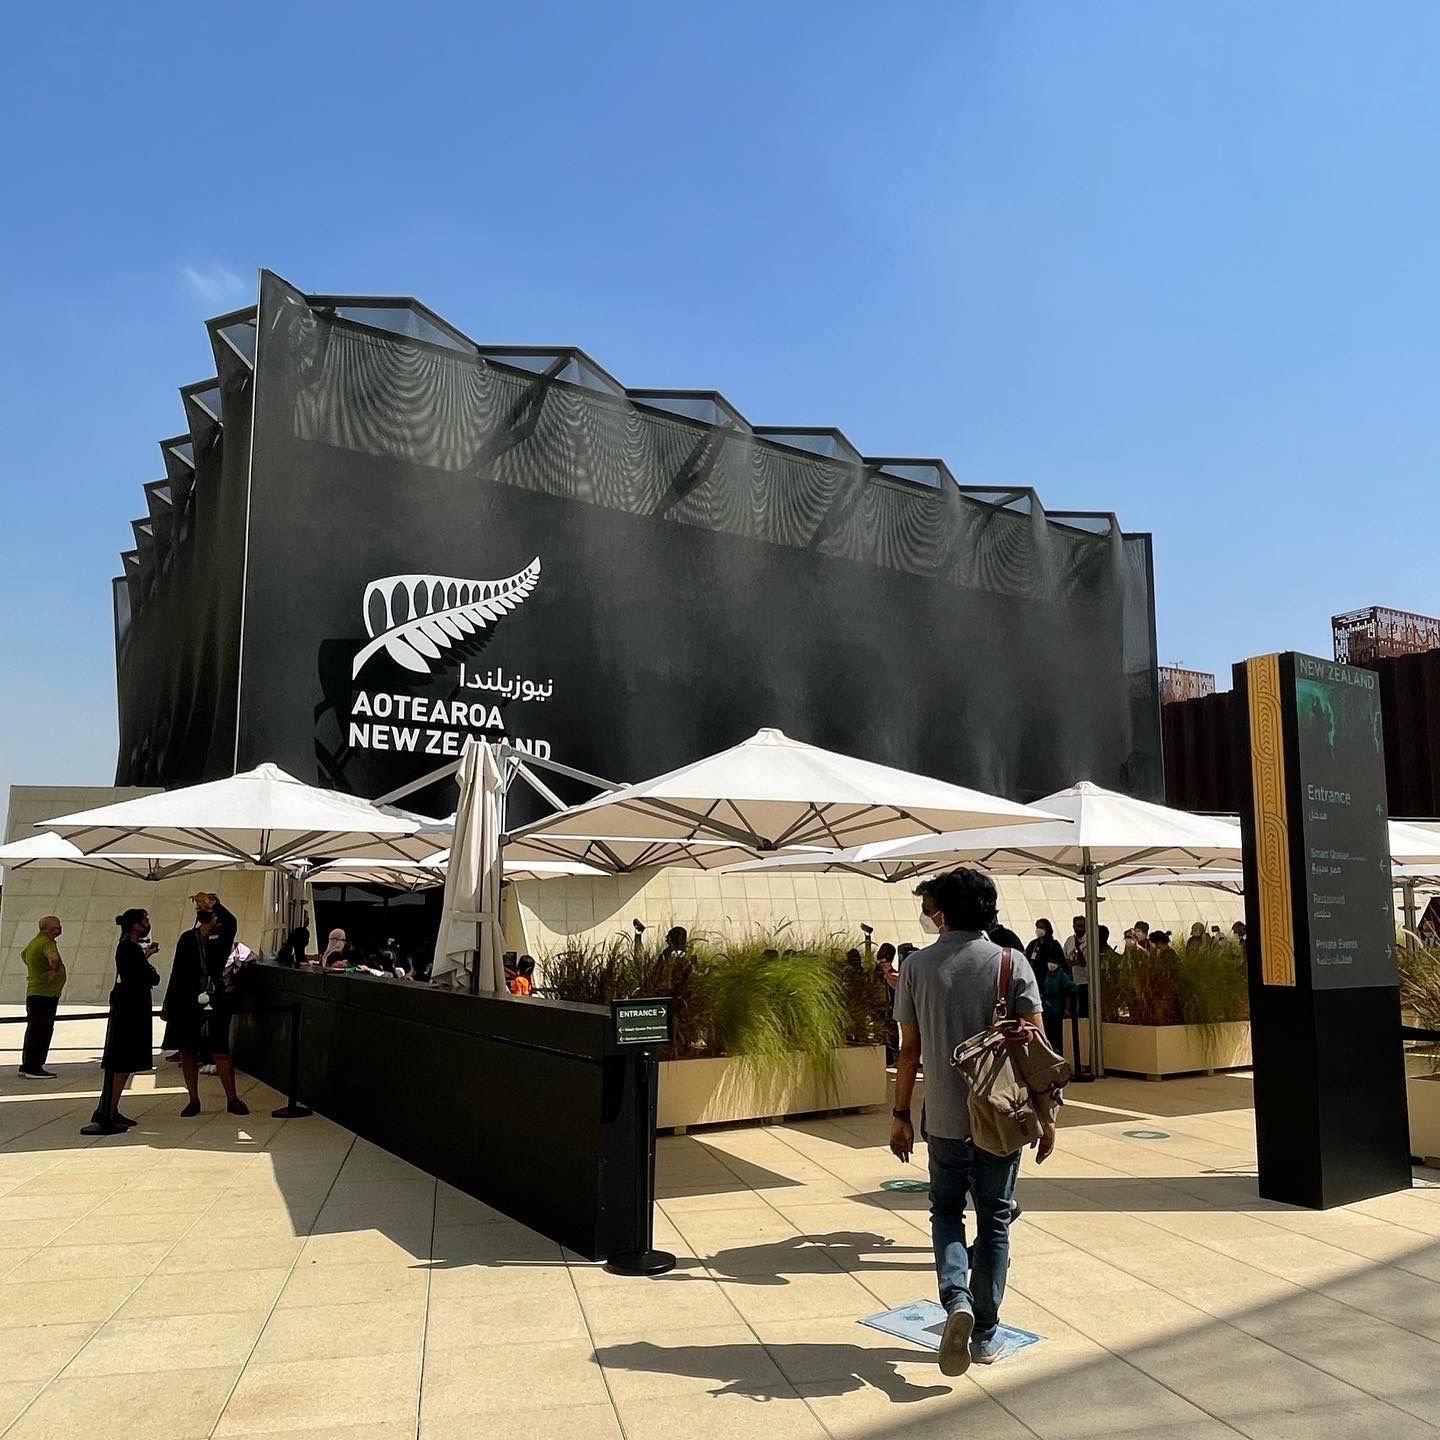 The EXPO 2020 at Dubai UAE